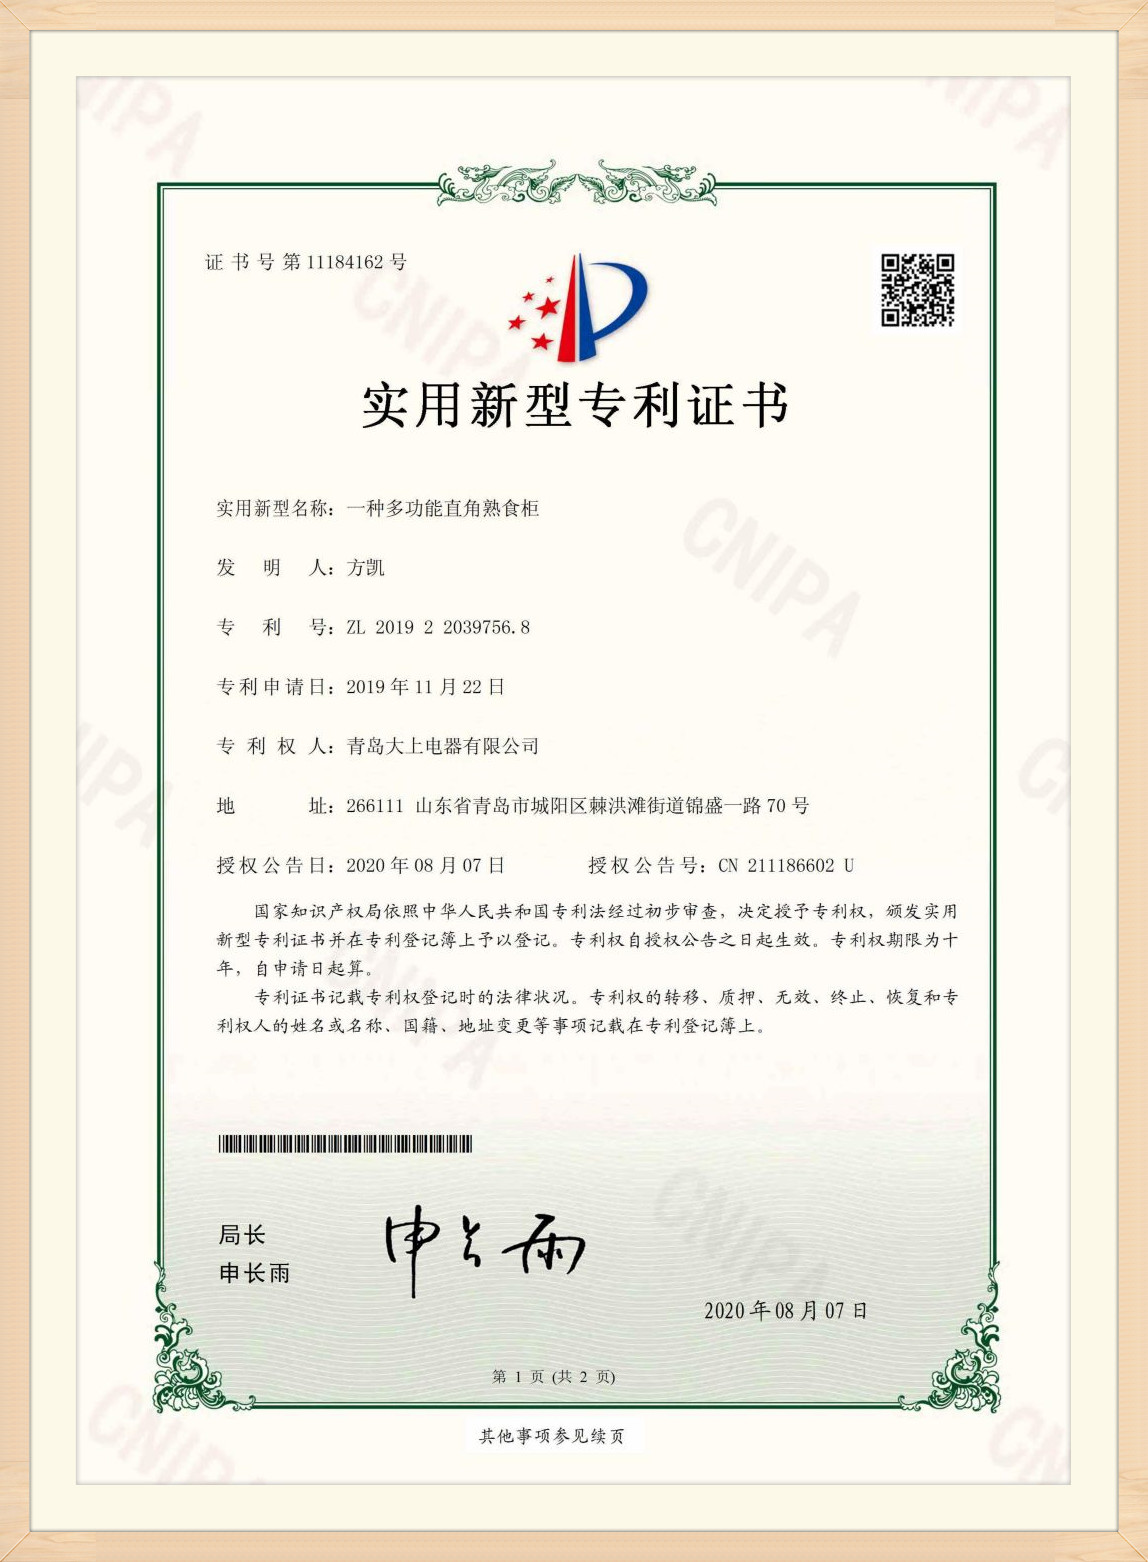 Certificado de patente (16)